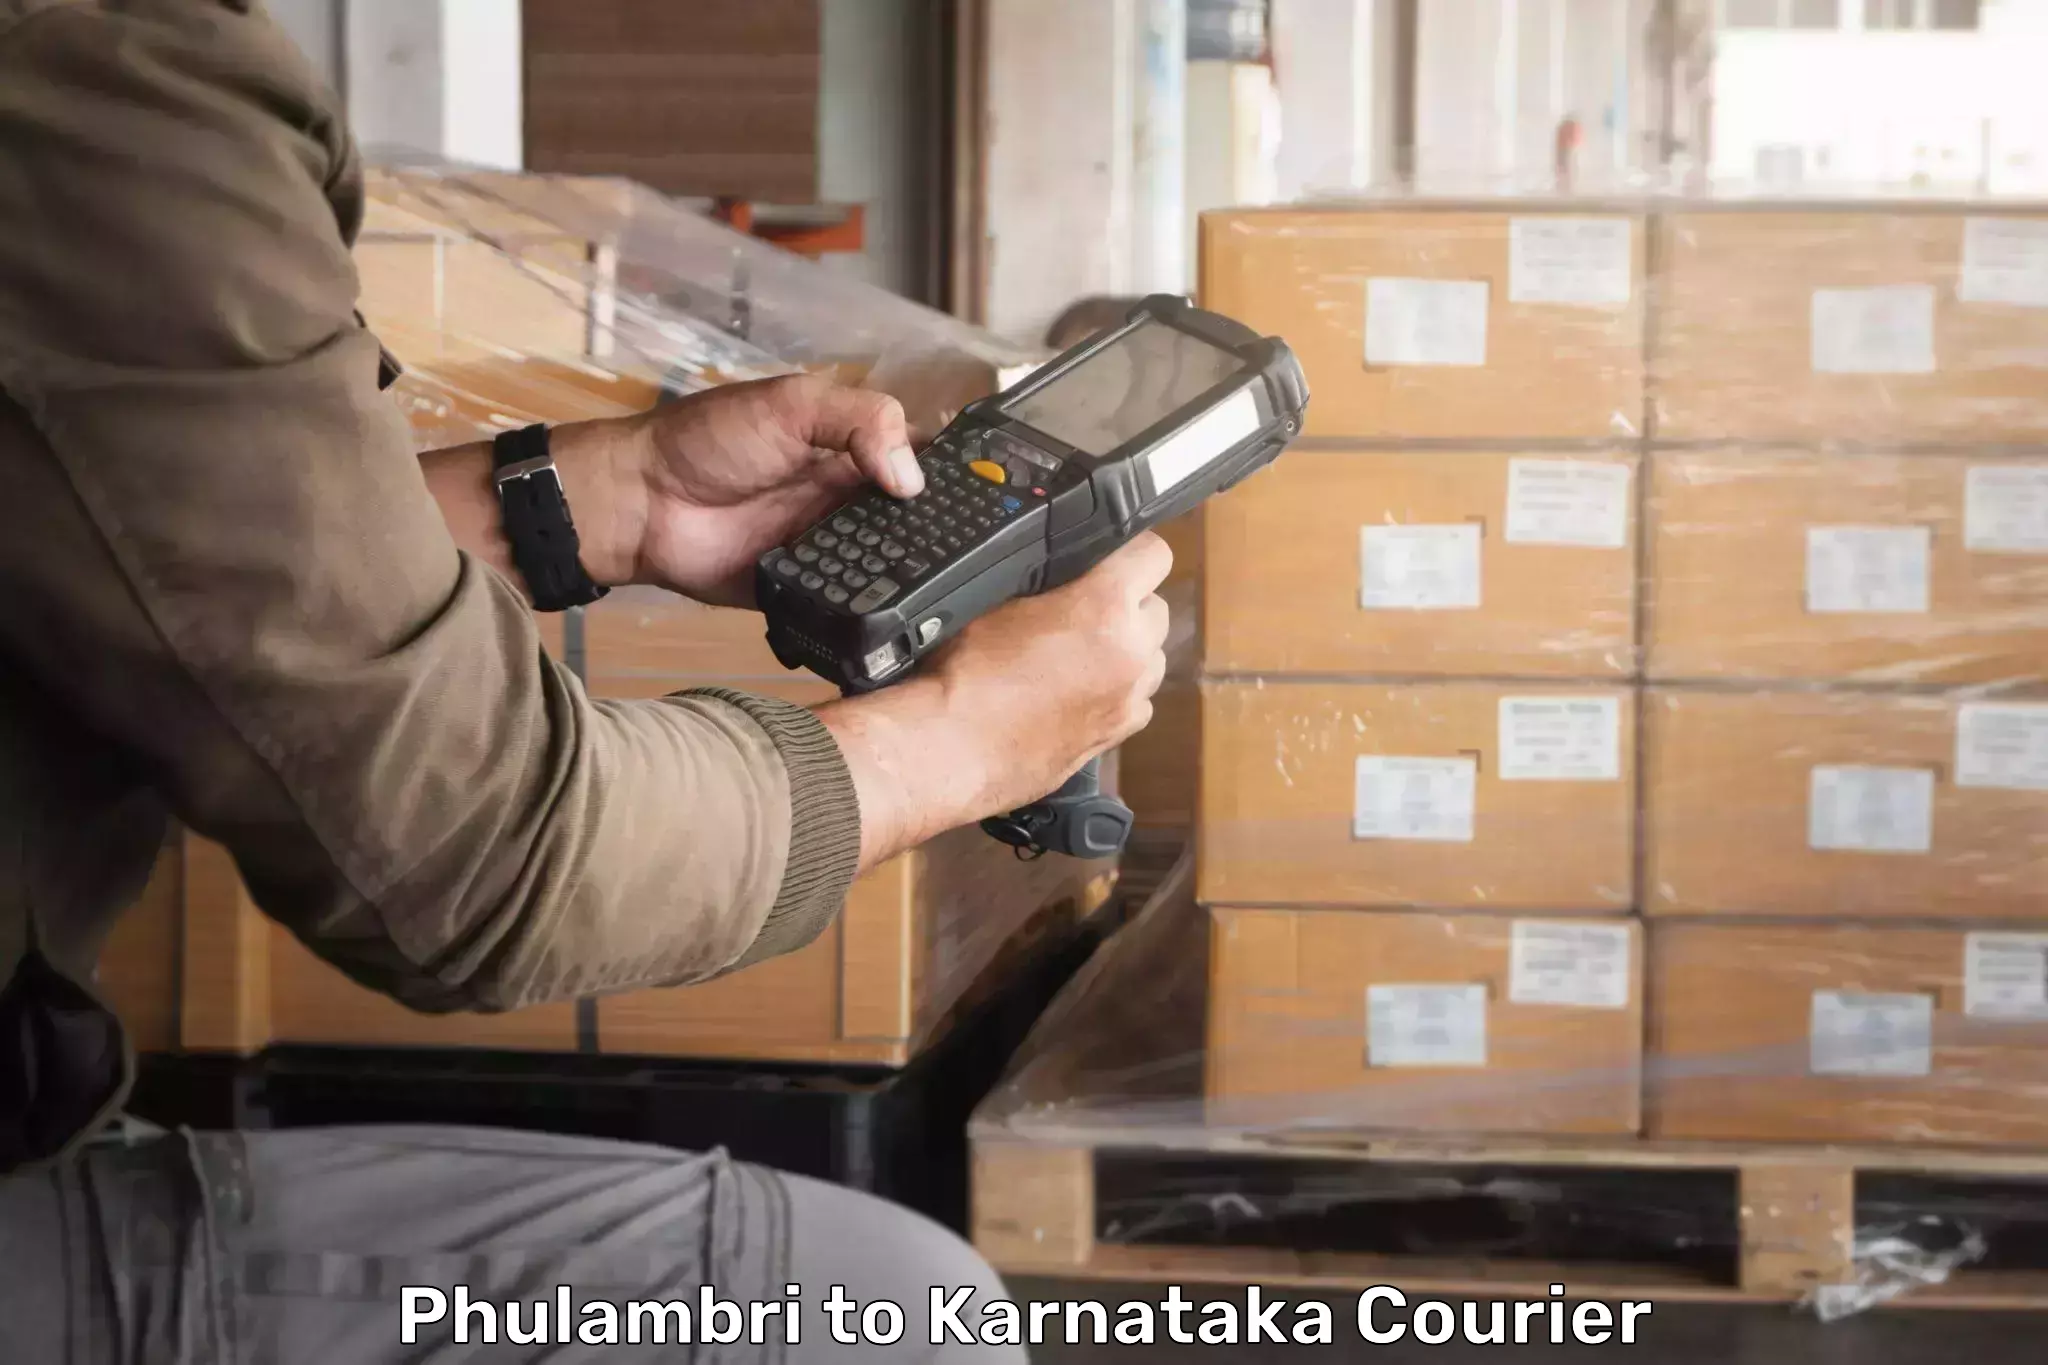 Seamless shipping experience Phulambri to Shiralakoppa